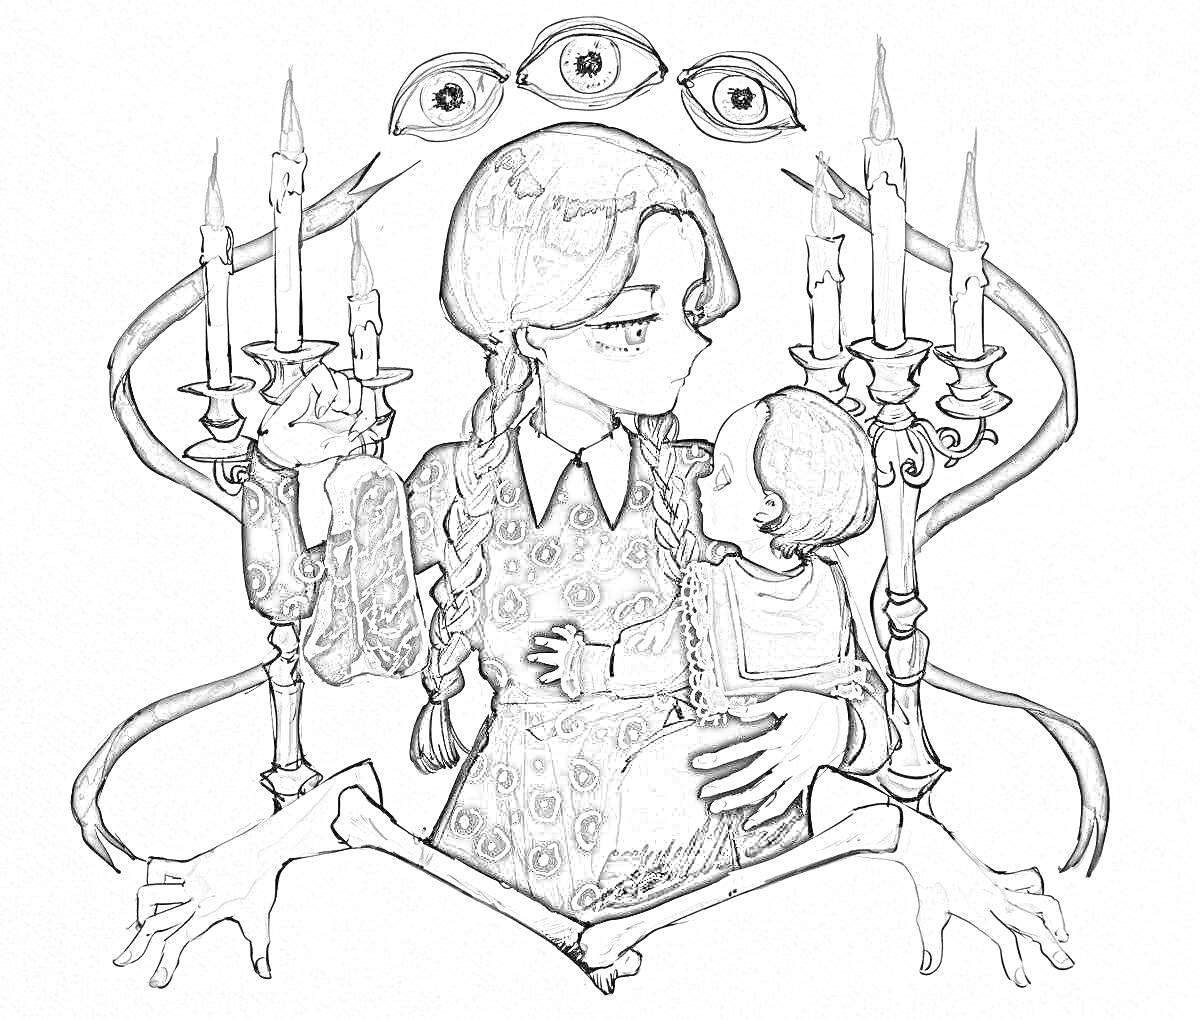 Уэнздей Аддамс держит руку и младенца, окруженная свечами на держателях и тентаклями, с тремя глазами наверху